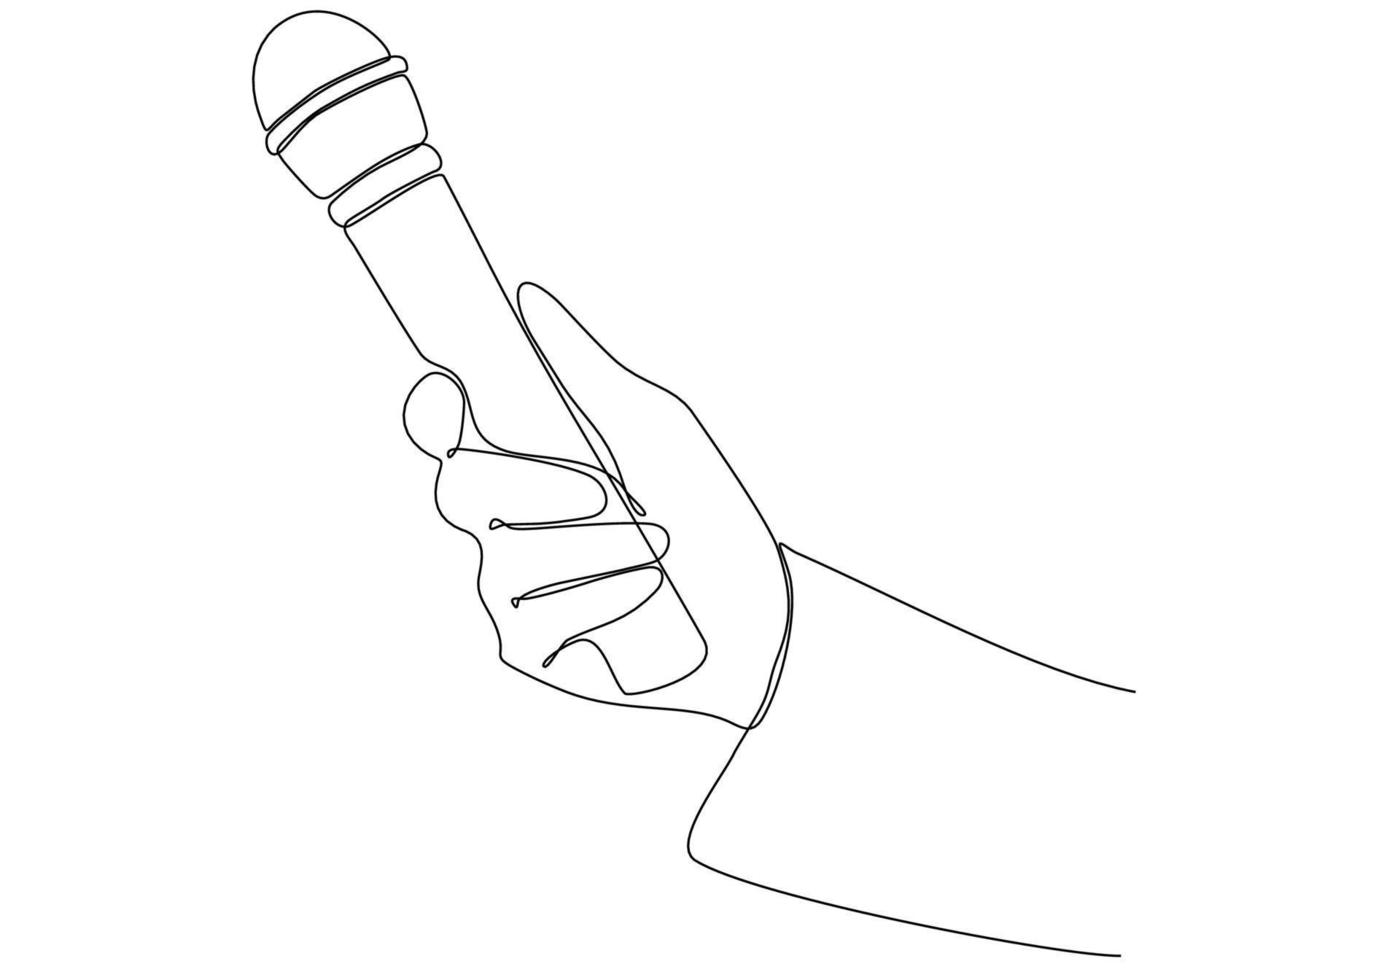 immagine a linea continua che tiene microfono, illustrazione vettoriale del simbolo del giornalista